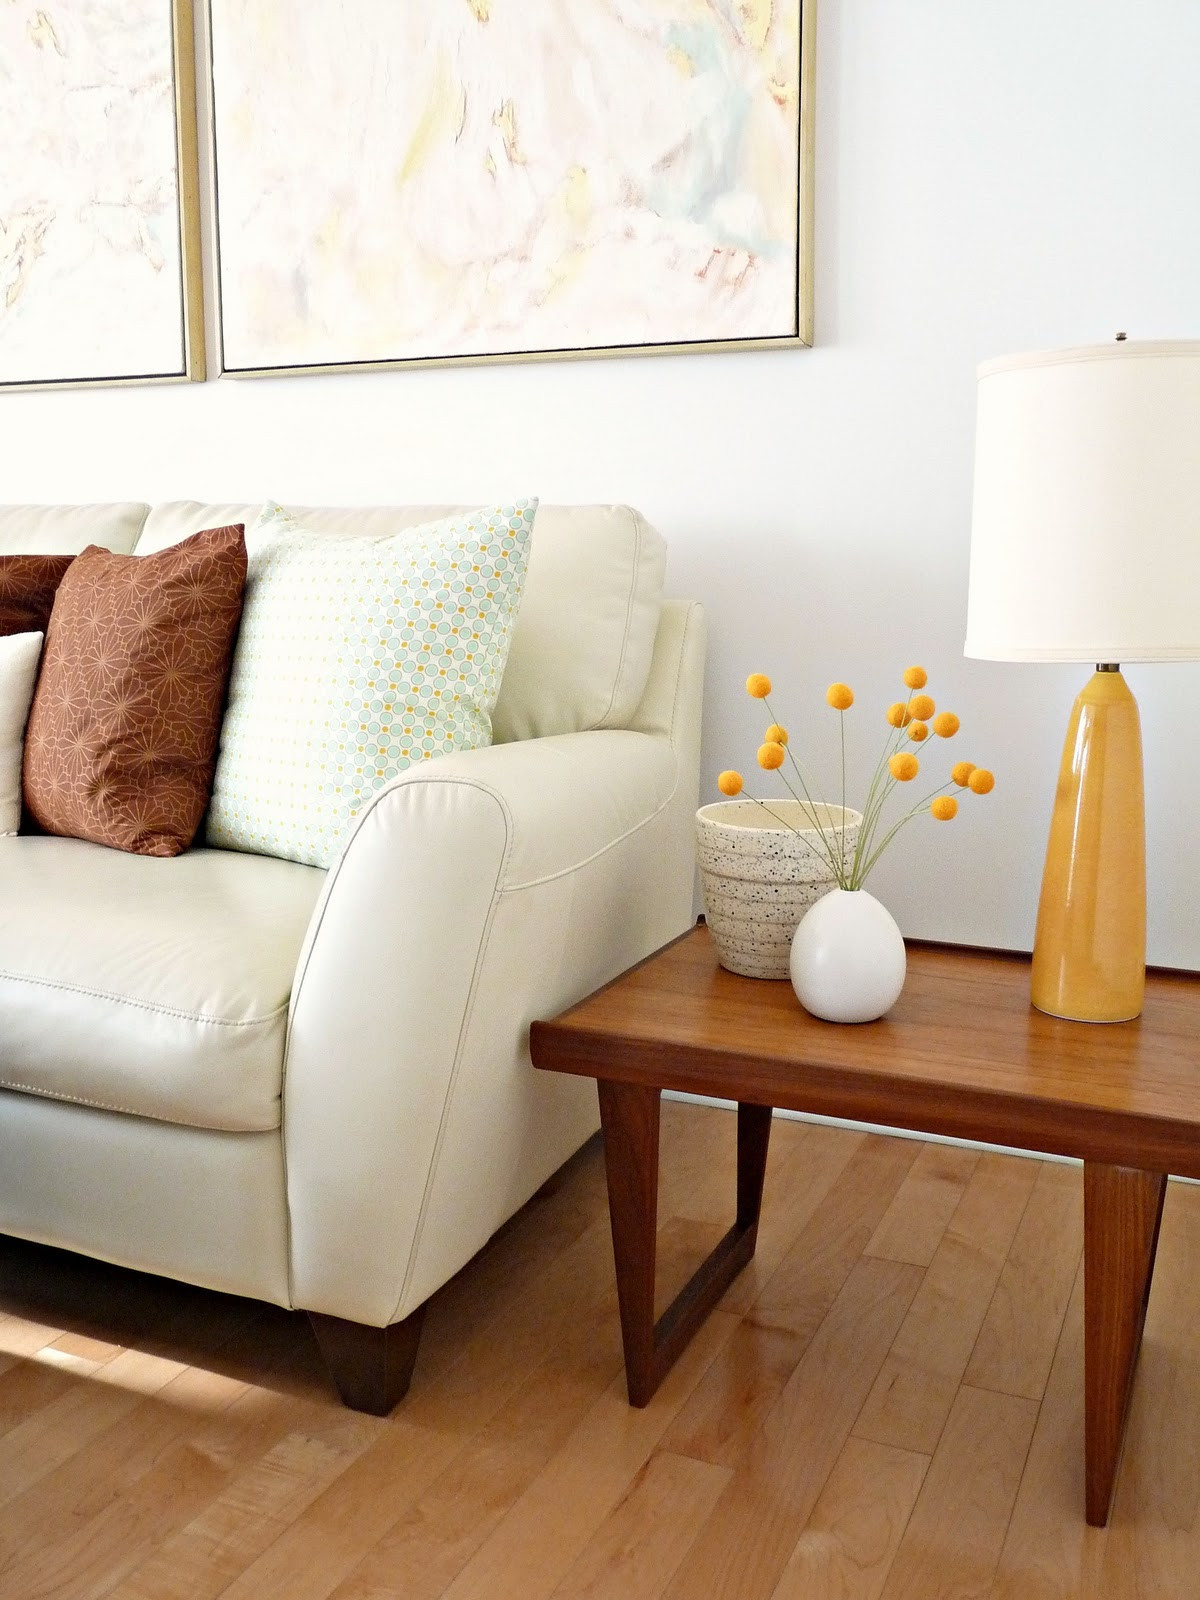 Modern Lamps For Living Room
 Best Table Lamps for Living Room Lighting Ideas